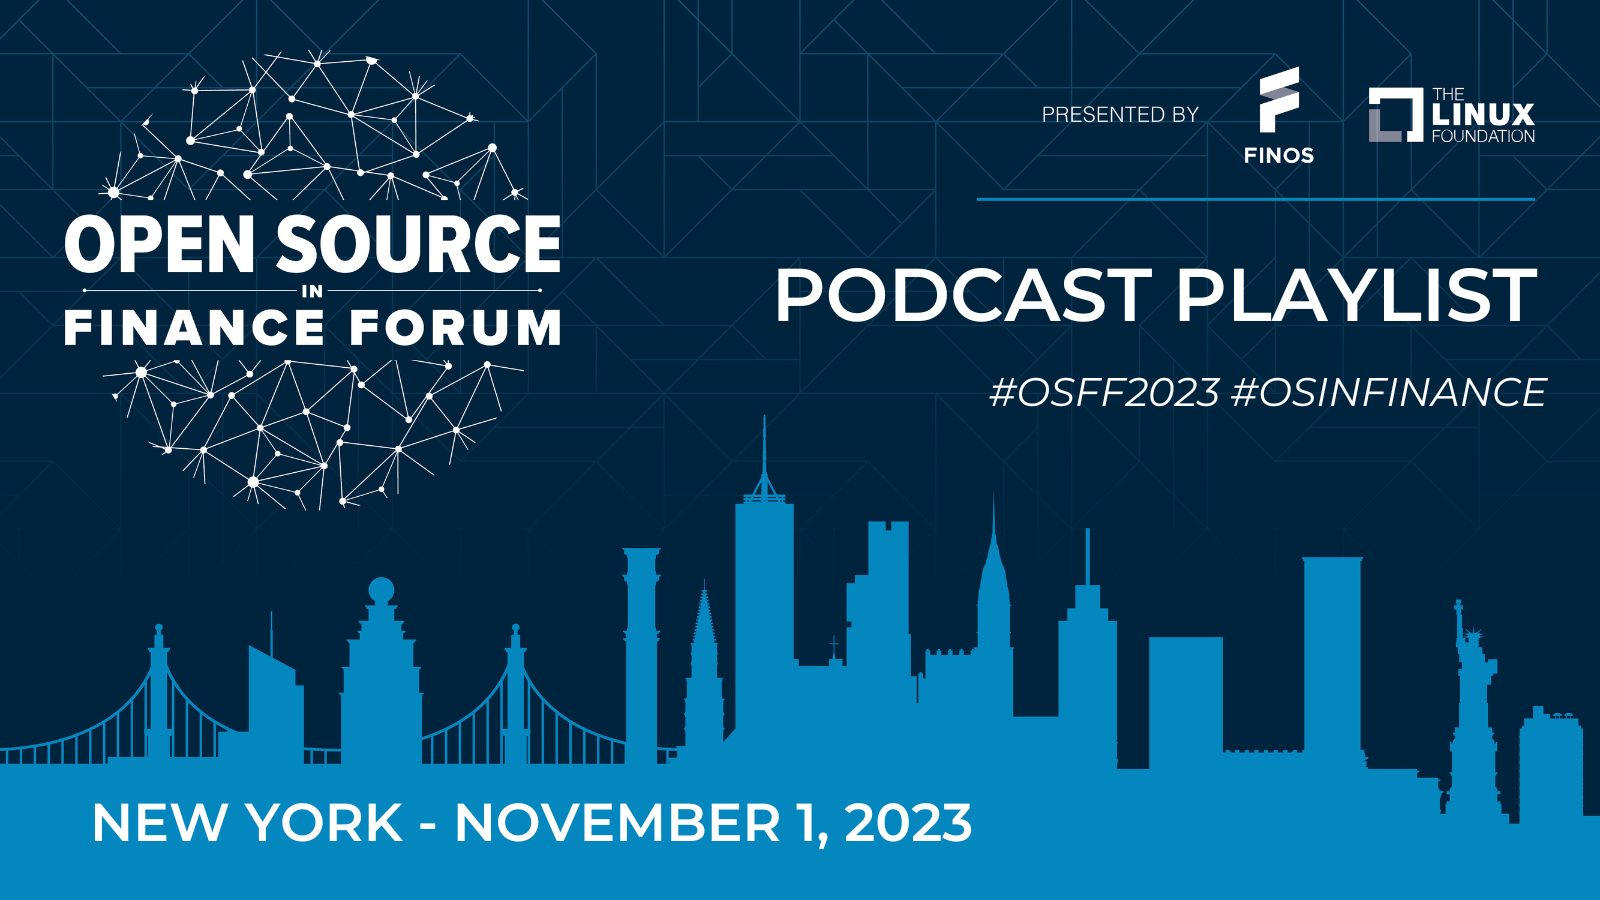 OSFF 2023: Podcast Playlist